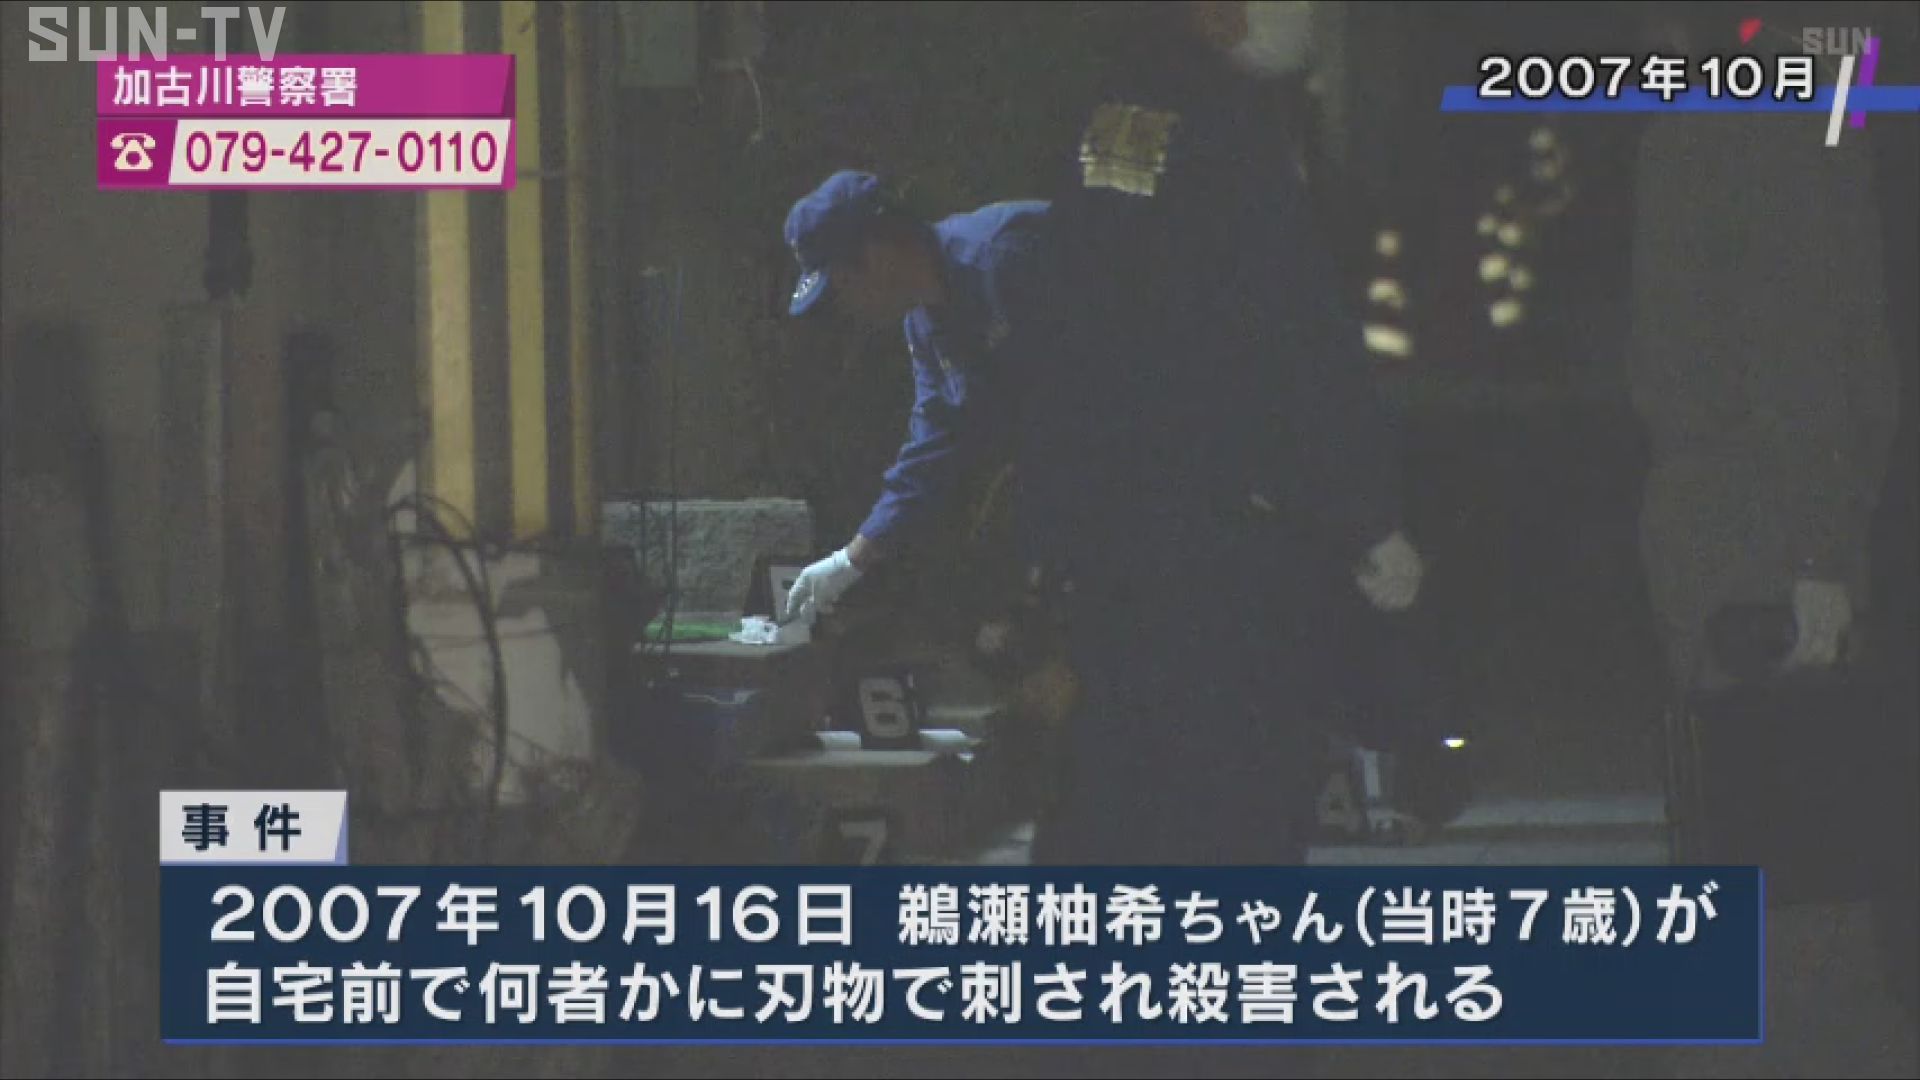 加古川 小2殺害15年 遺族らが情報提供を呼び掛け - サンテレビニュース